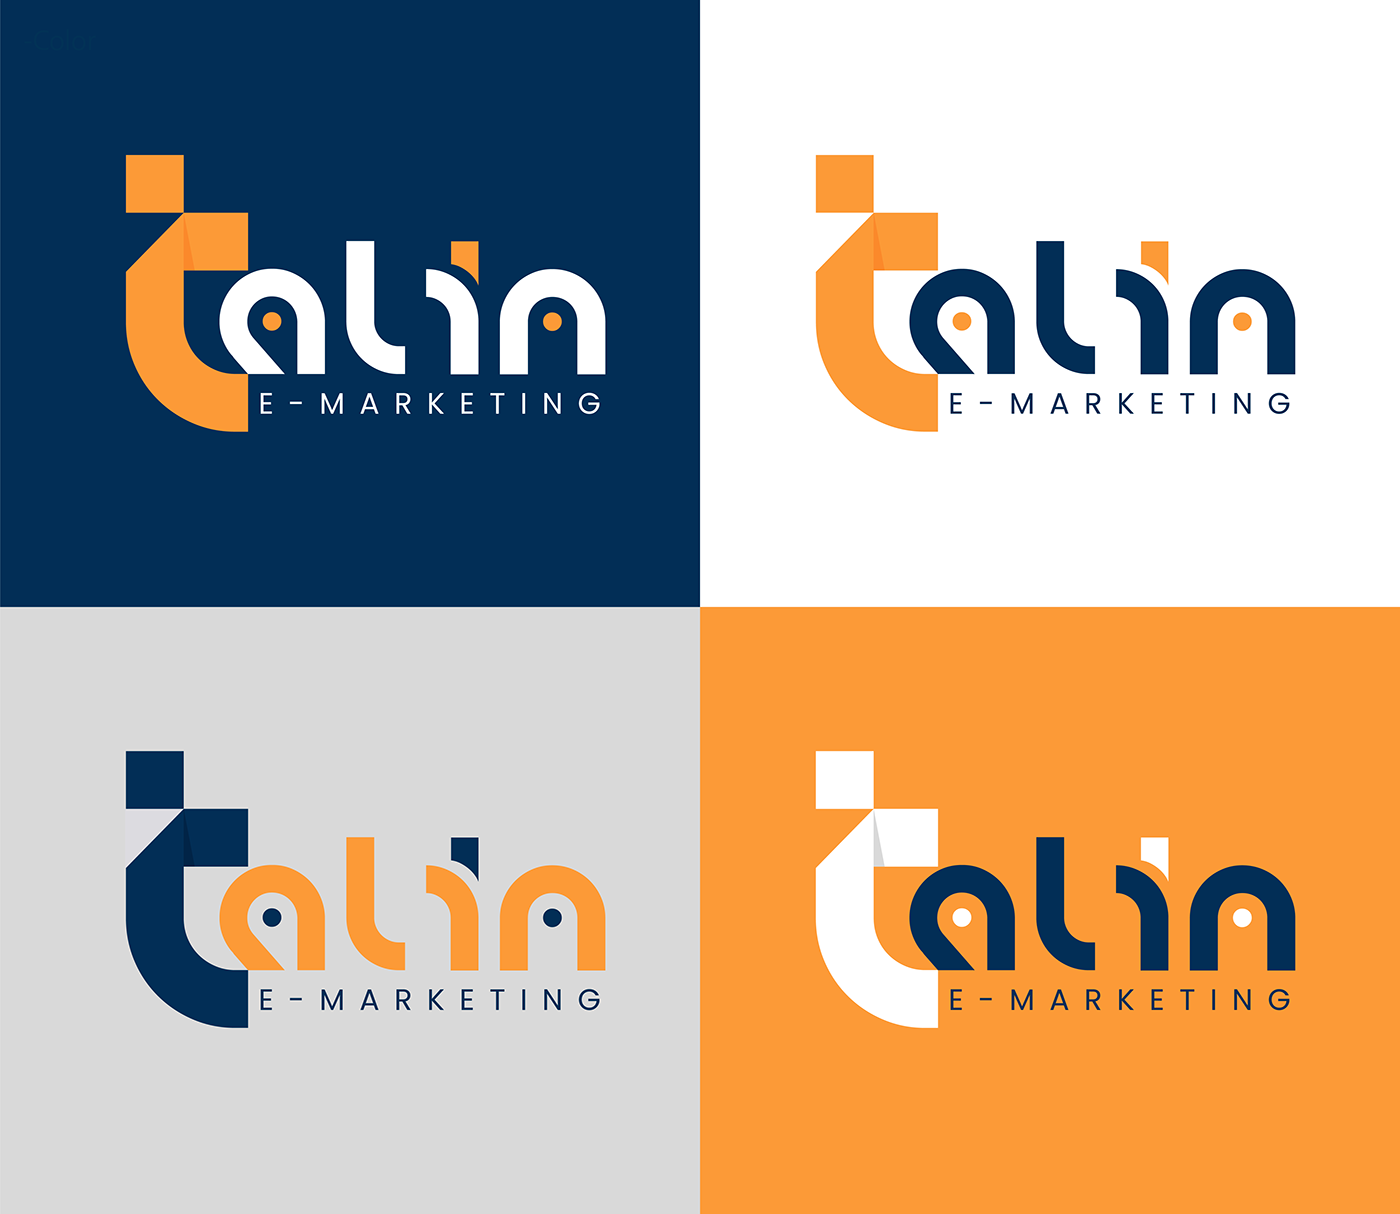 adobe illustrator Advertising  brand identity identity logo Logo Design marketing   photoshop social media visual identity